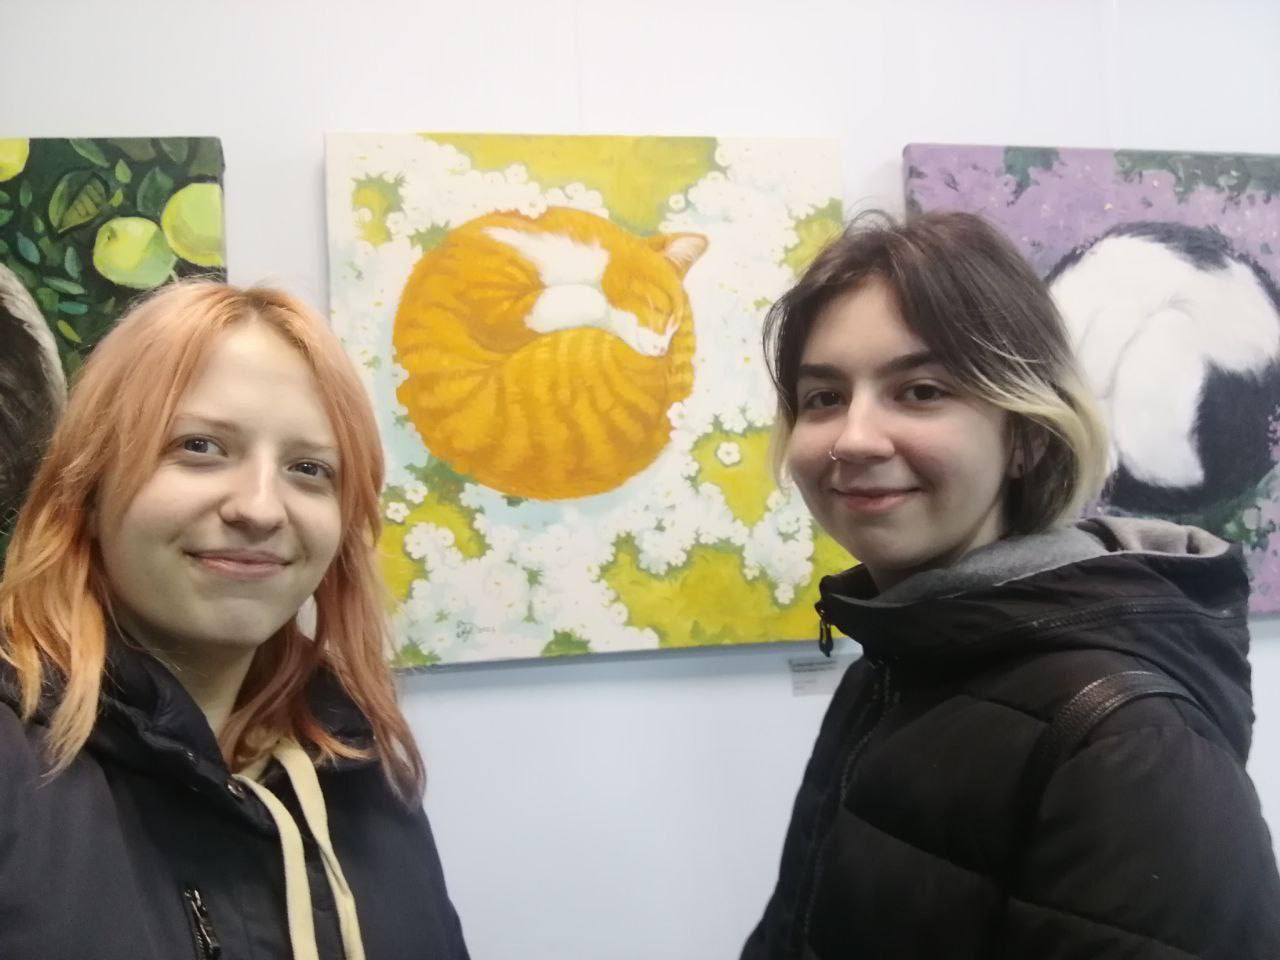 Посещение персональной выставки картин неслышащего художника Александра Покотило «Уютный мир котиков»